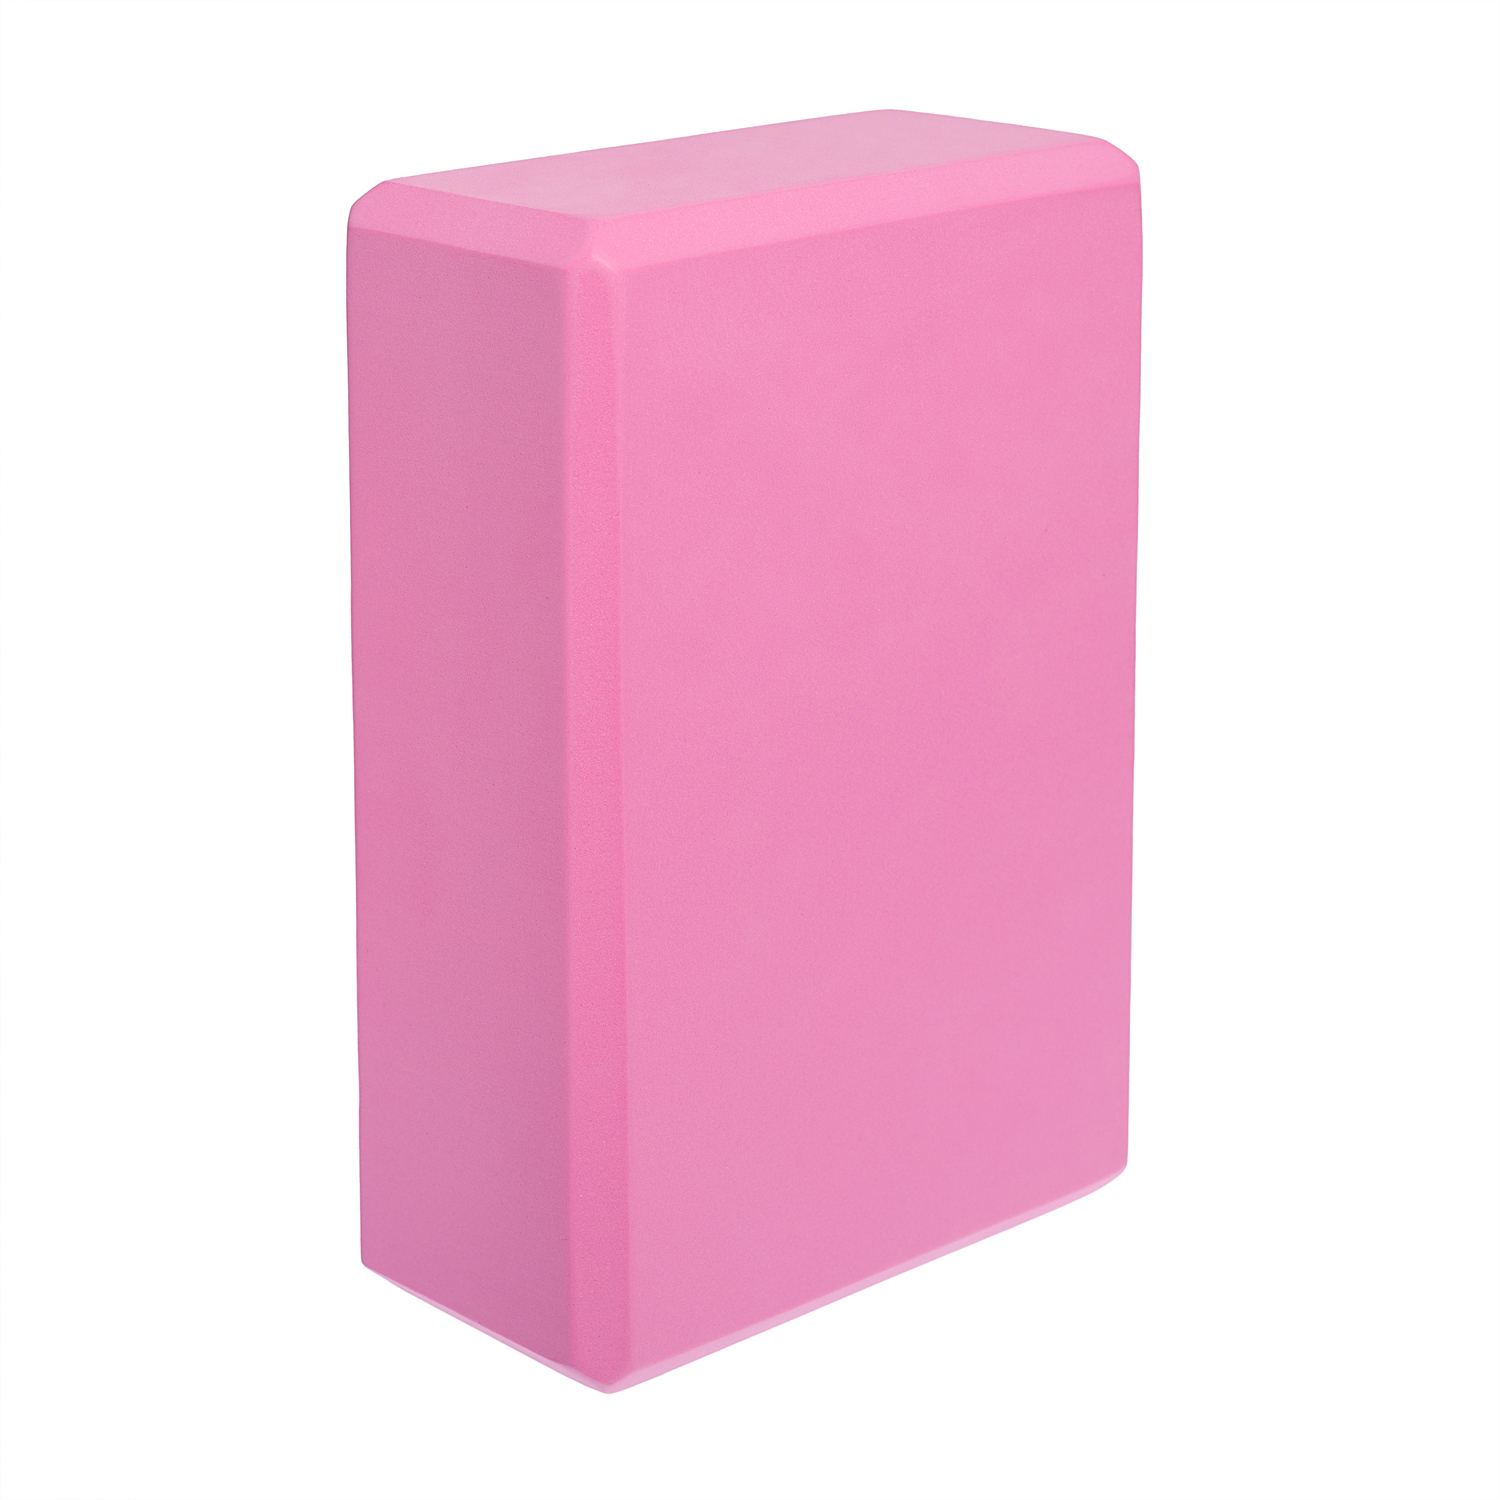 Блок для йоги STRONG BODY розовый - фото 3